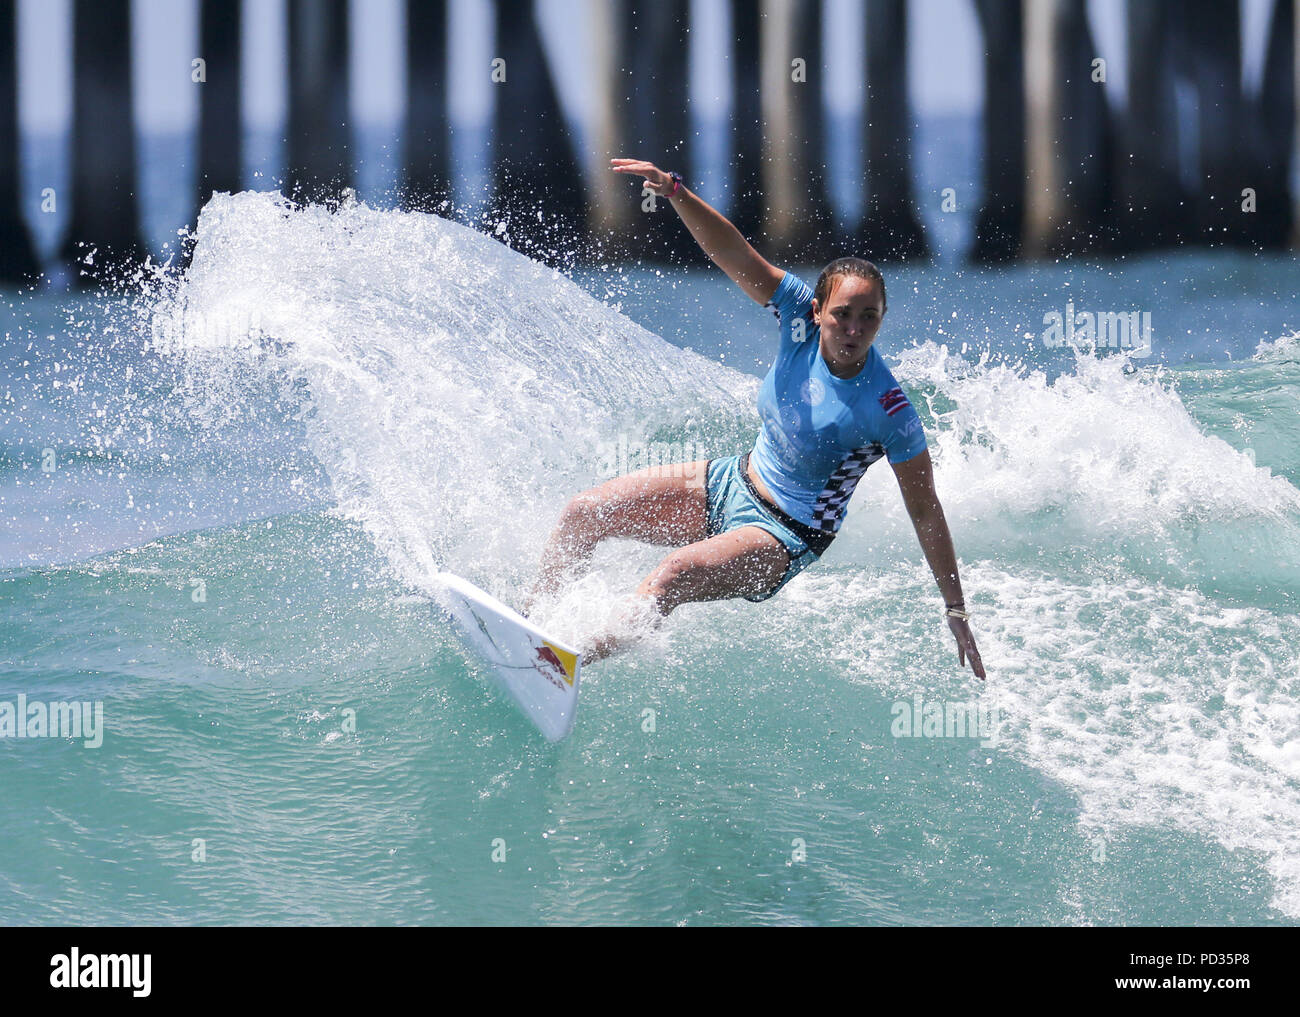 5 août 2018 - Los Angeles, Californie, États-Unis - Carissa Moore participe à la demi-finale à l'US Open de Surf Vans le 5 août 2018 à Huntington Beach, en Californie. (Crédit Image : © Ringo Chiu via Zuma sur le fil) Banque D'Images